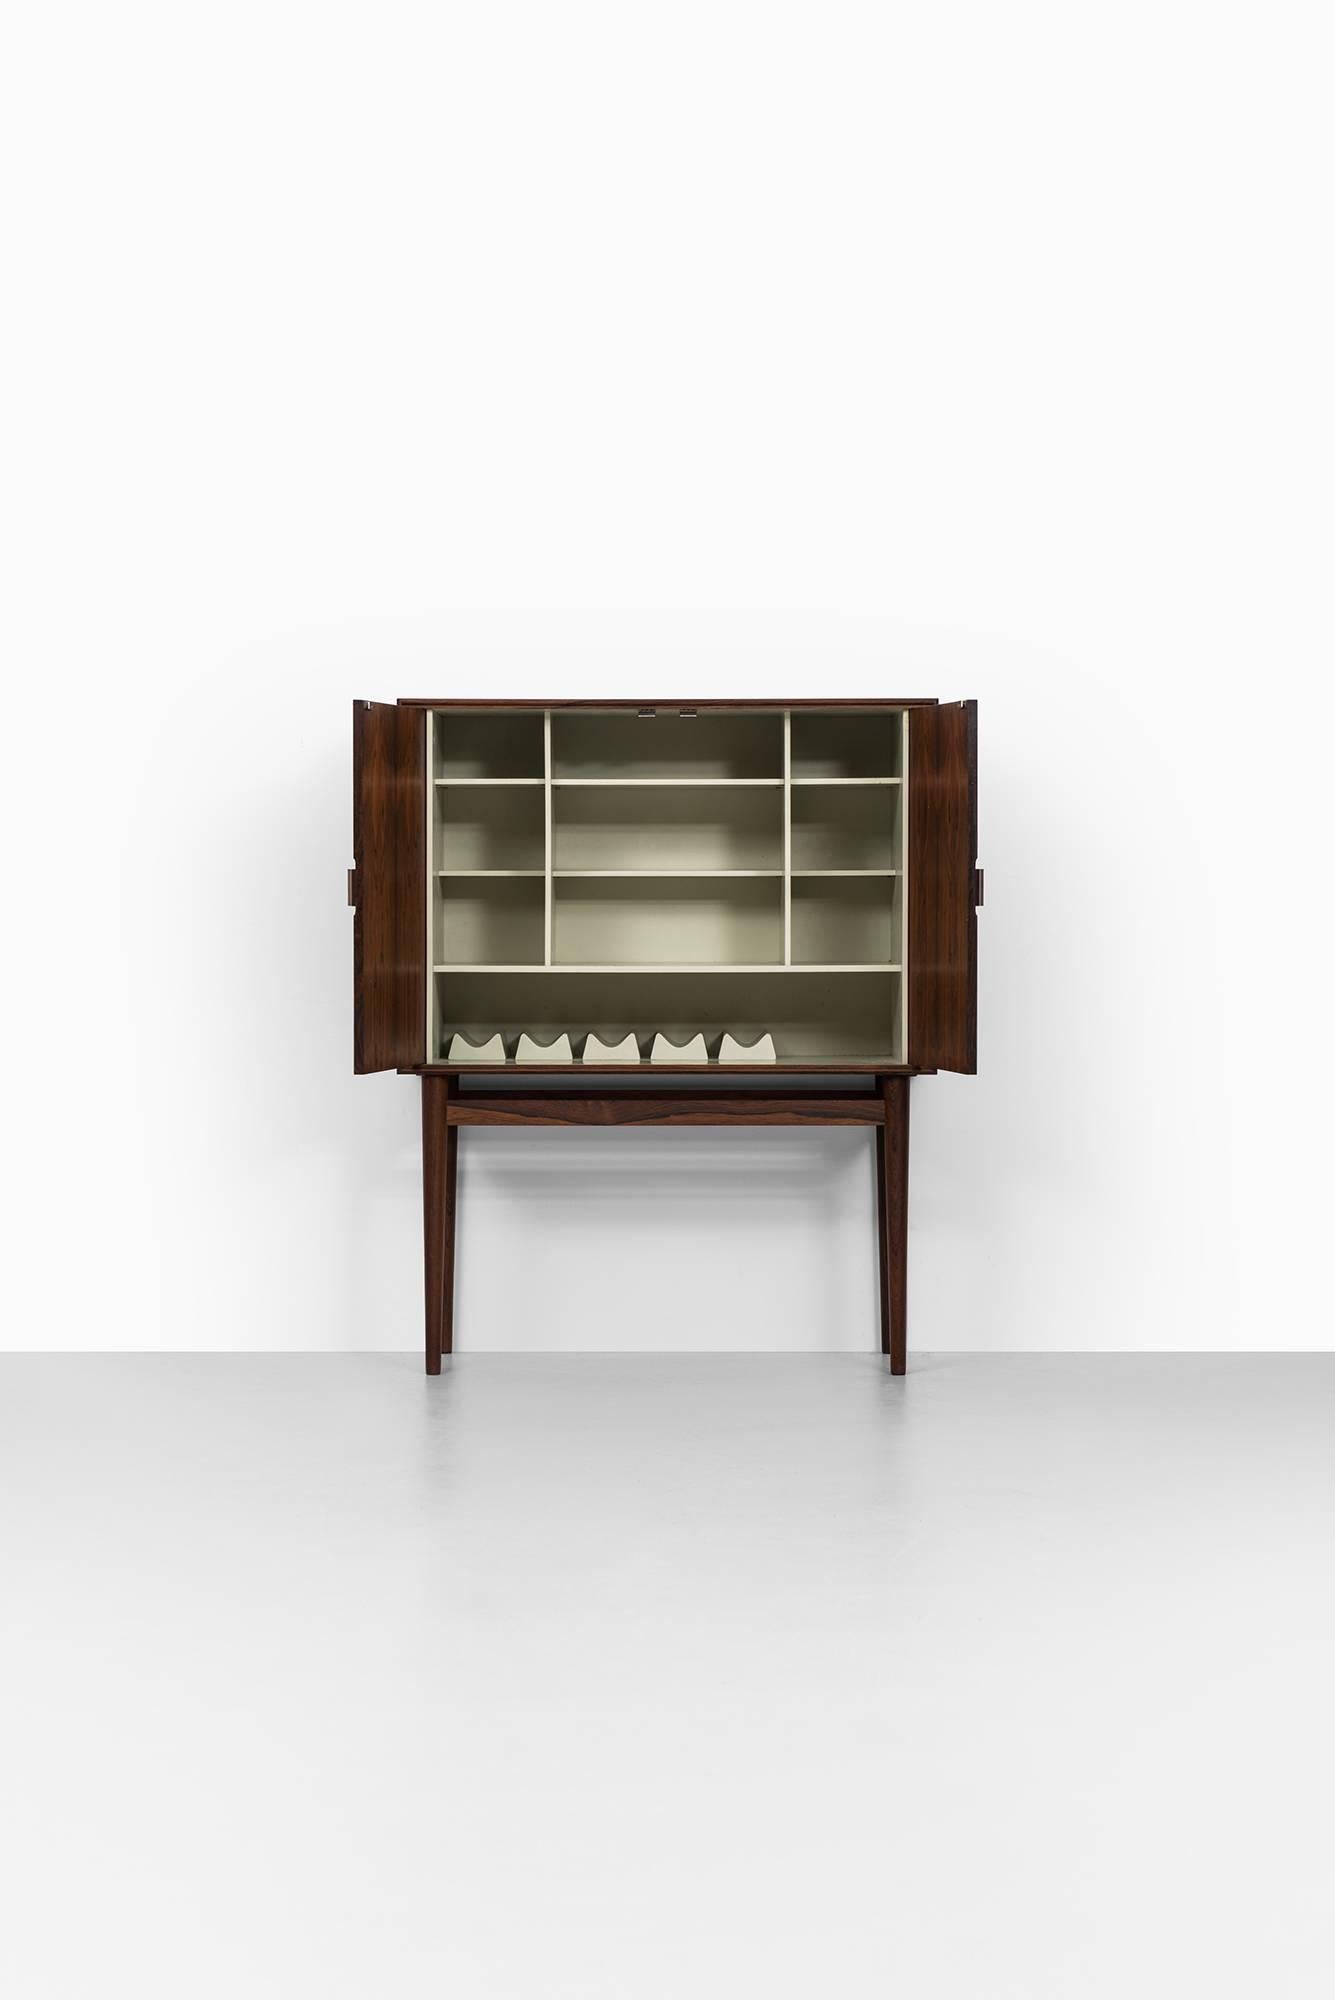 Rare bar cabinet model 63 designed by Helge Vestergaard Jensen. Produced by Jason Møbler in Denmark.